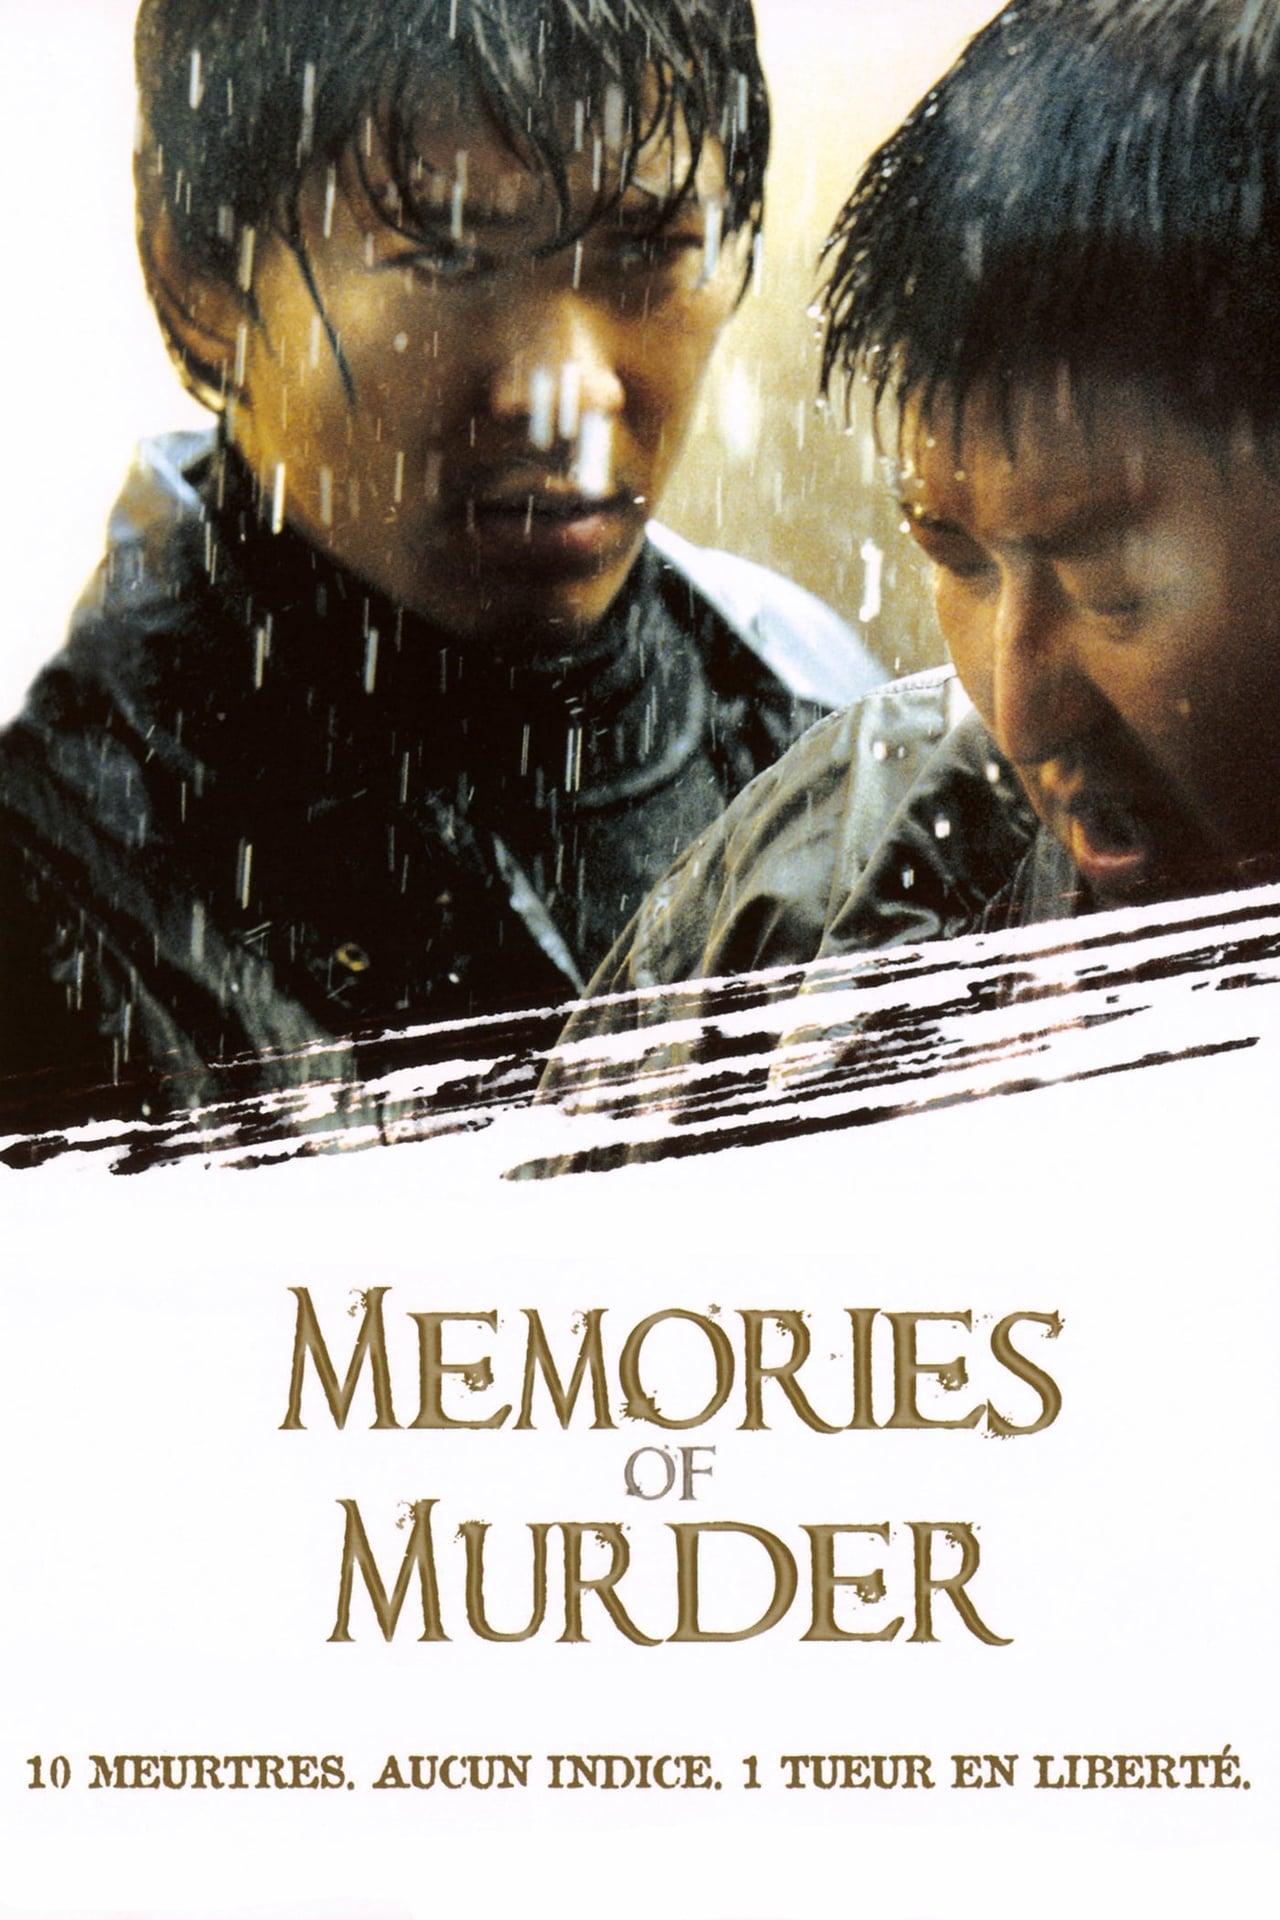 memories of murder movie